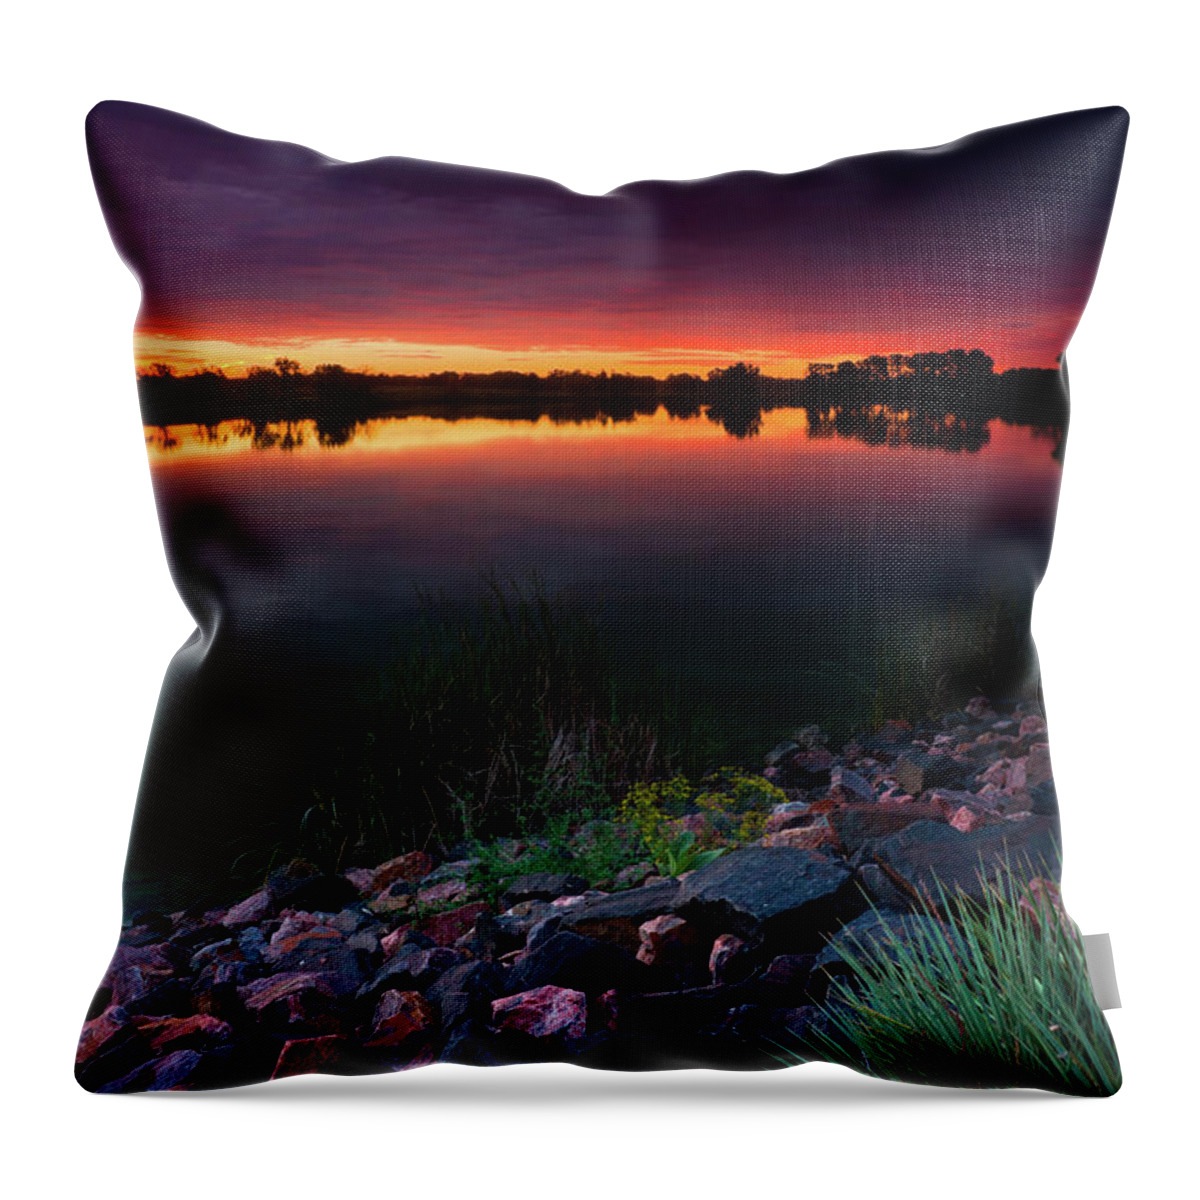 Colorado Throw Pillow featuring the photograph Lake Of Color by John De Bord